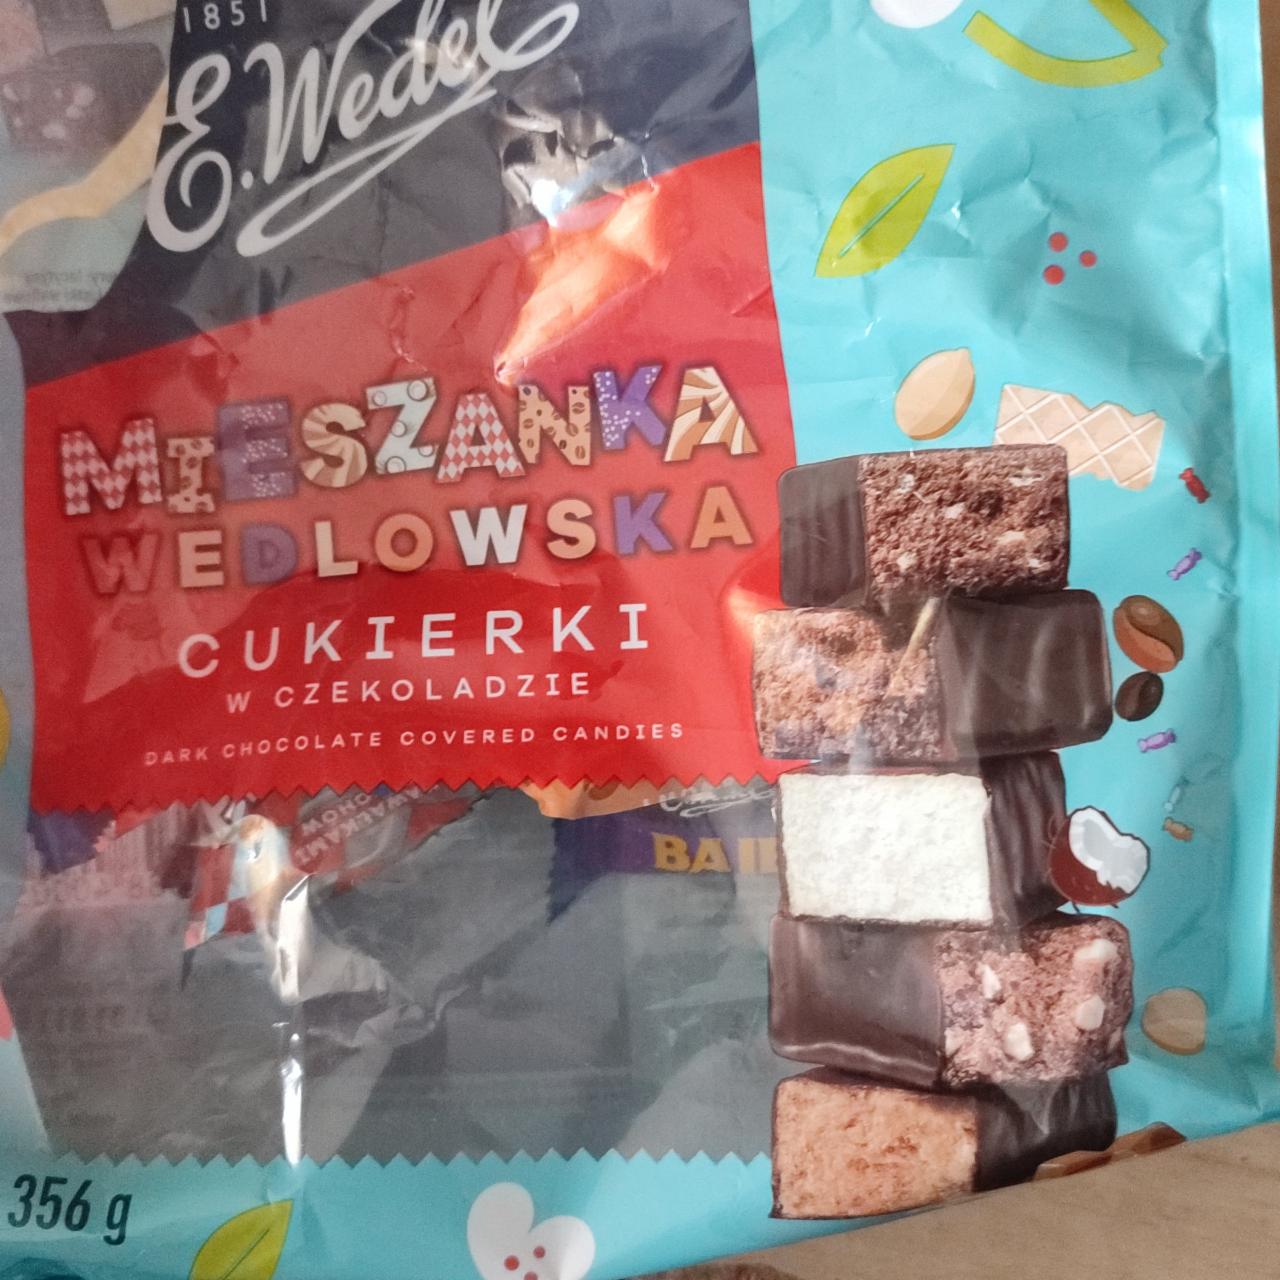 Zdjęcia - Mieszanka Wedlowska Cukierki w czekoladzie E.wedel